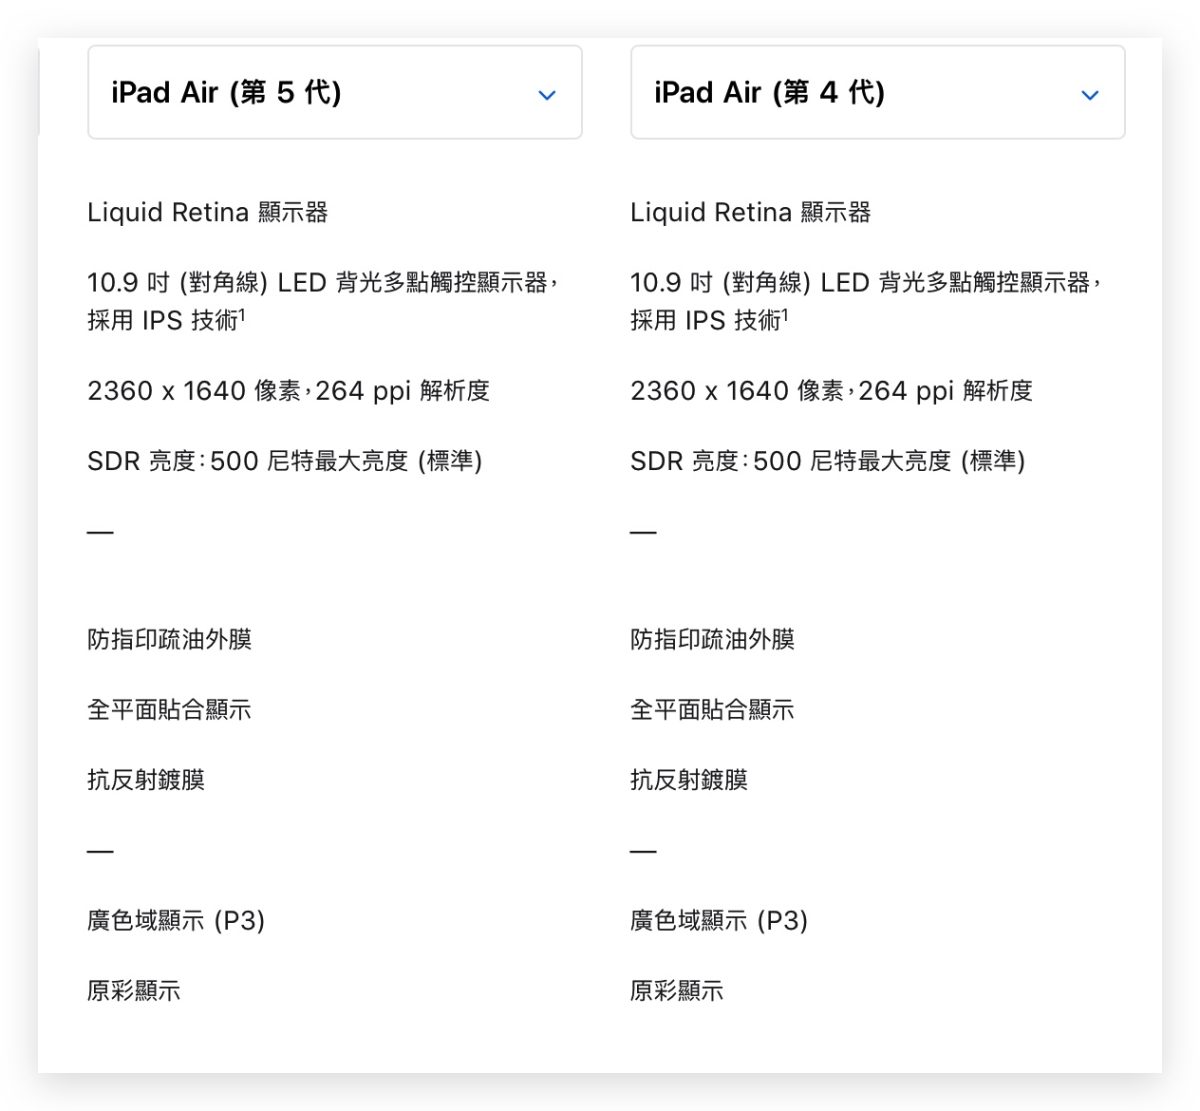 iPad Air 5 規格 顏色 售價 預購 上市日期 懶人包